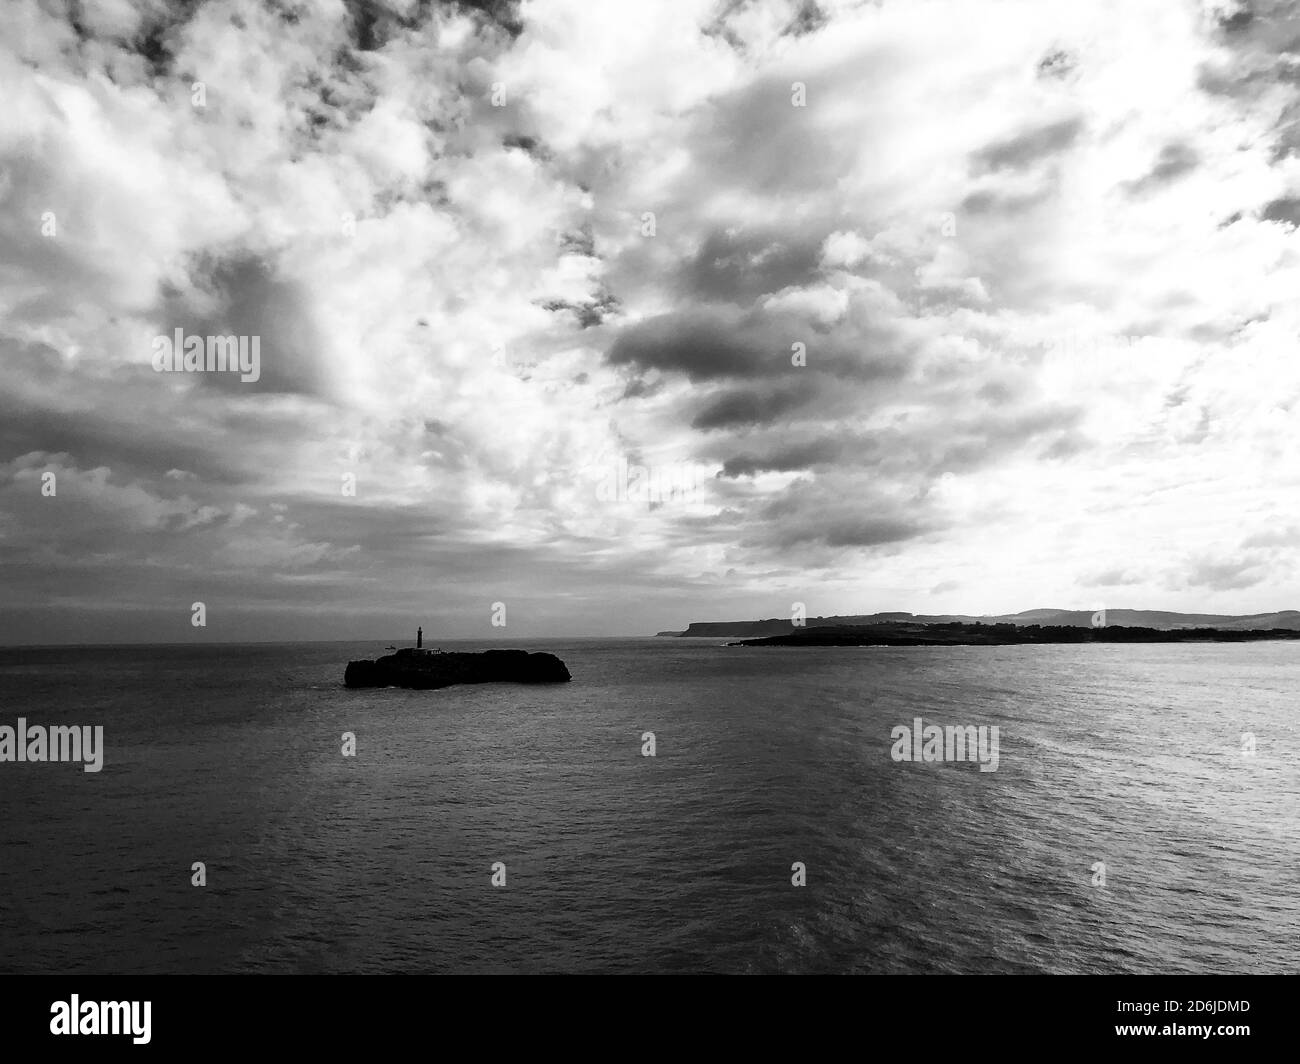 Copertura nuvolosa sommaria sul porto di Santander, Spagna. Fotografia in bianco e nero Foto Stock